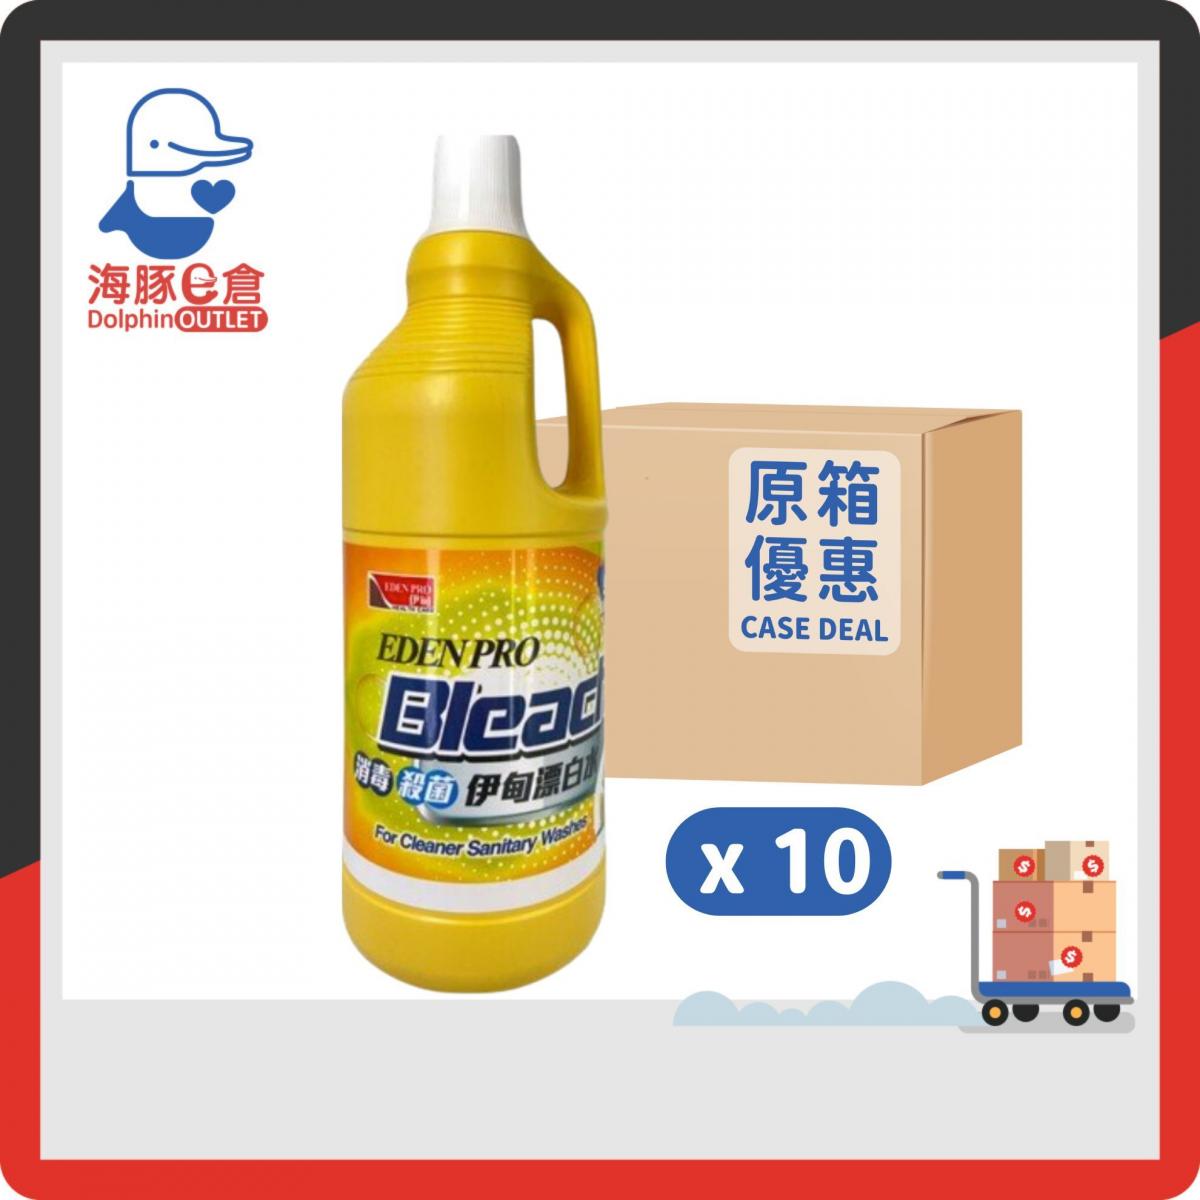 【Full Case】 Bleach 1.5L X10 bottle